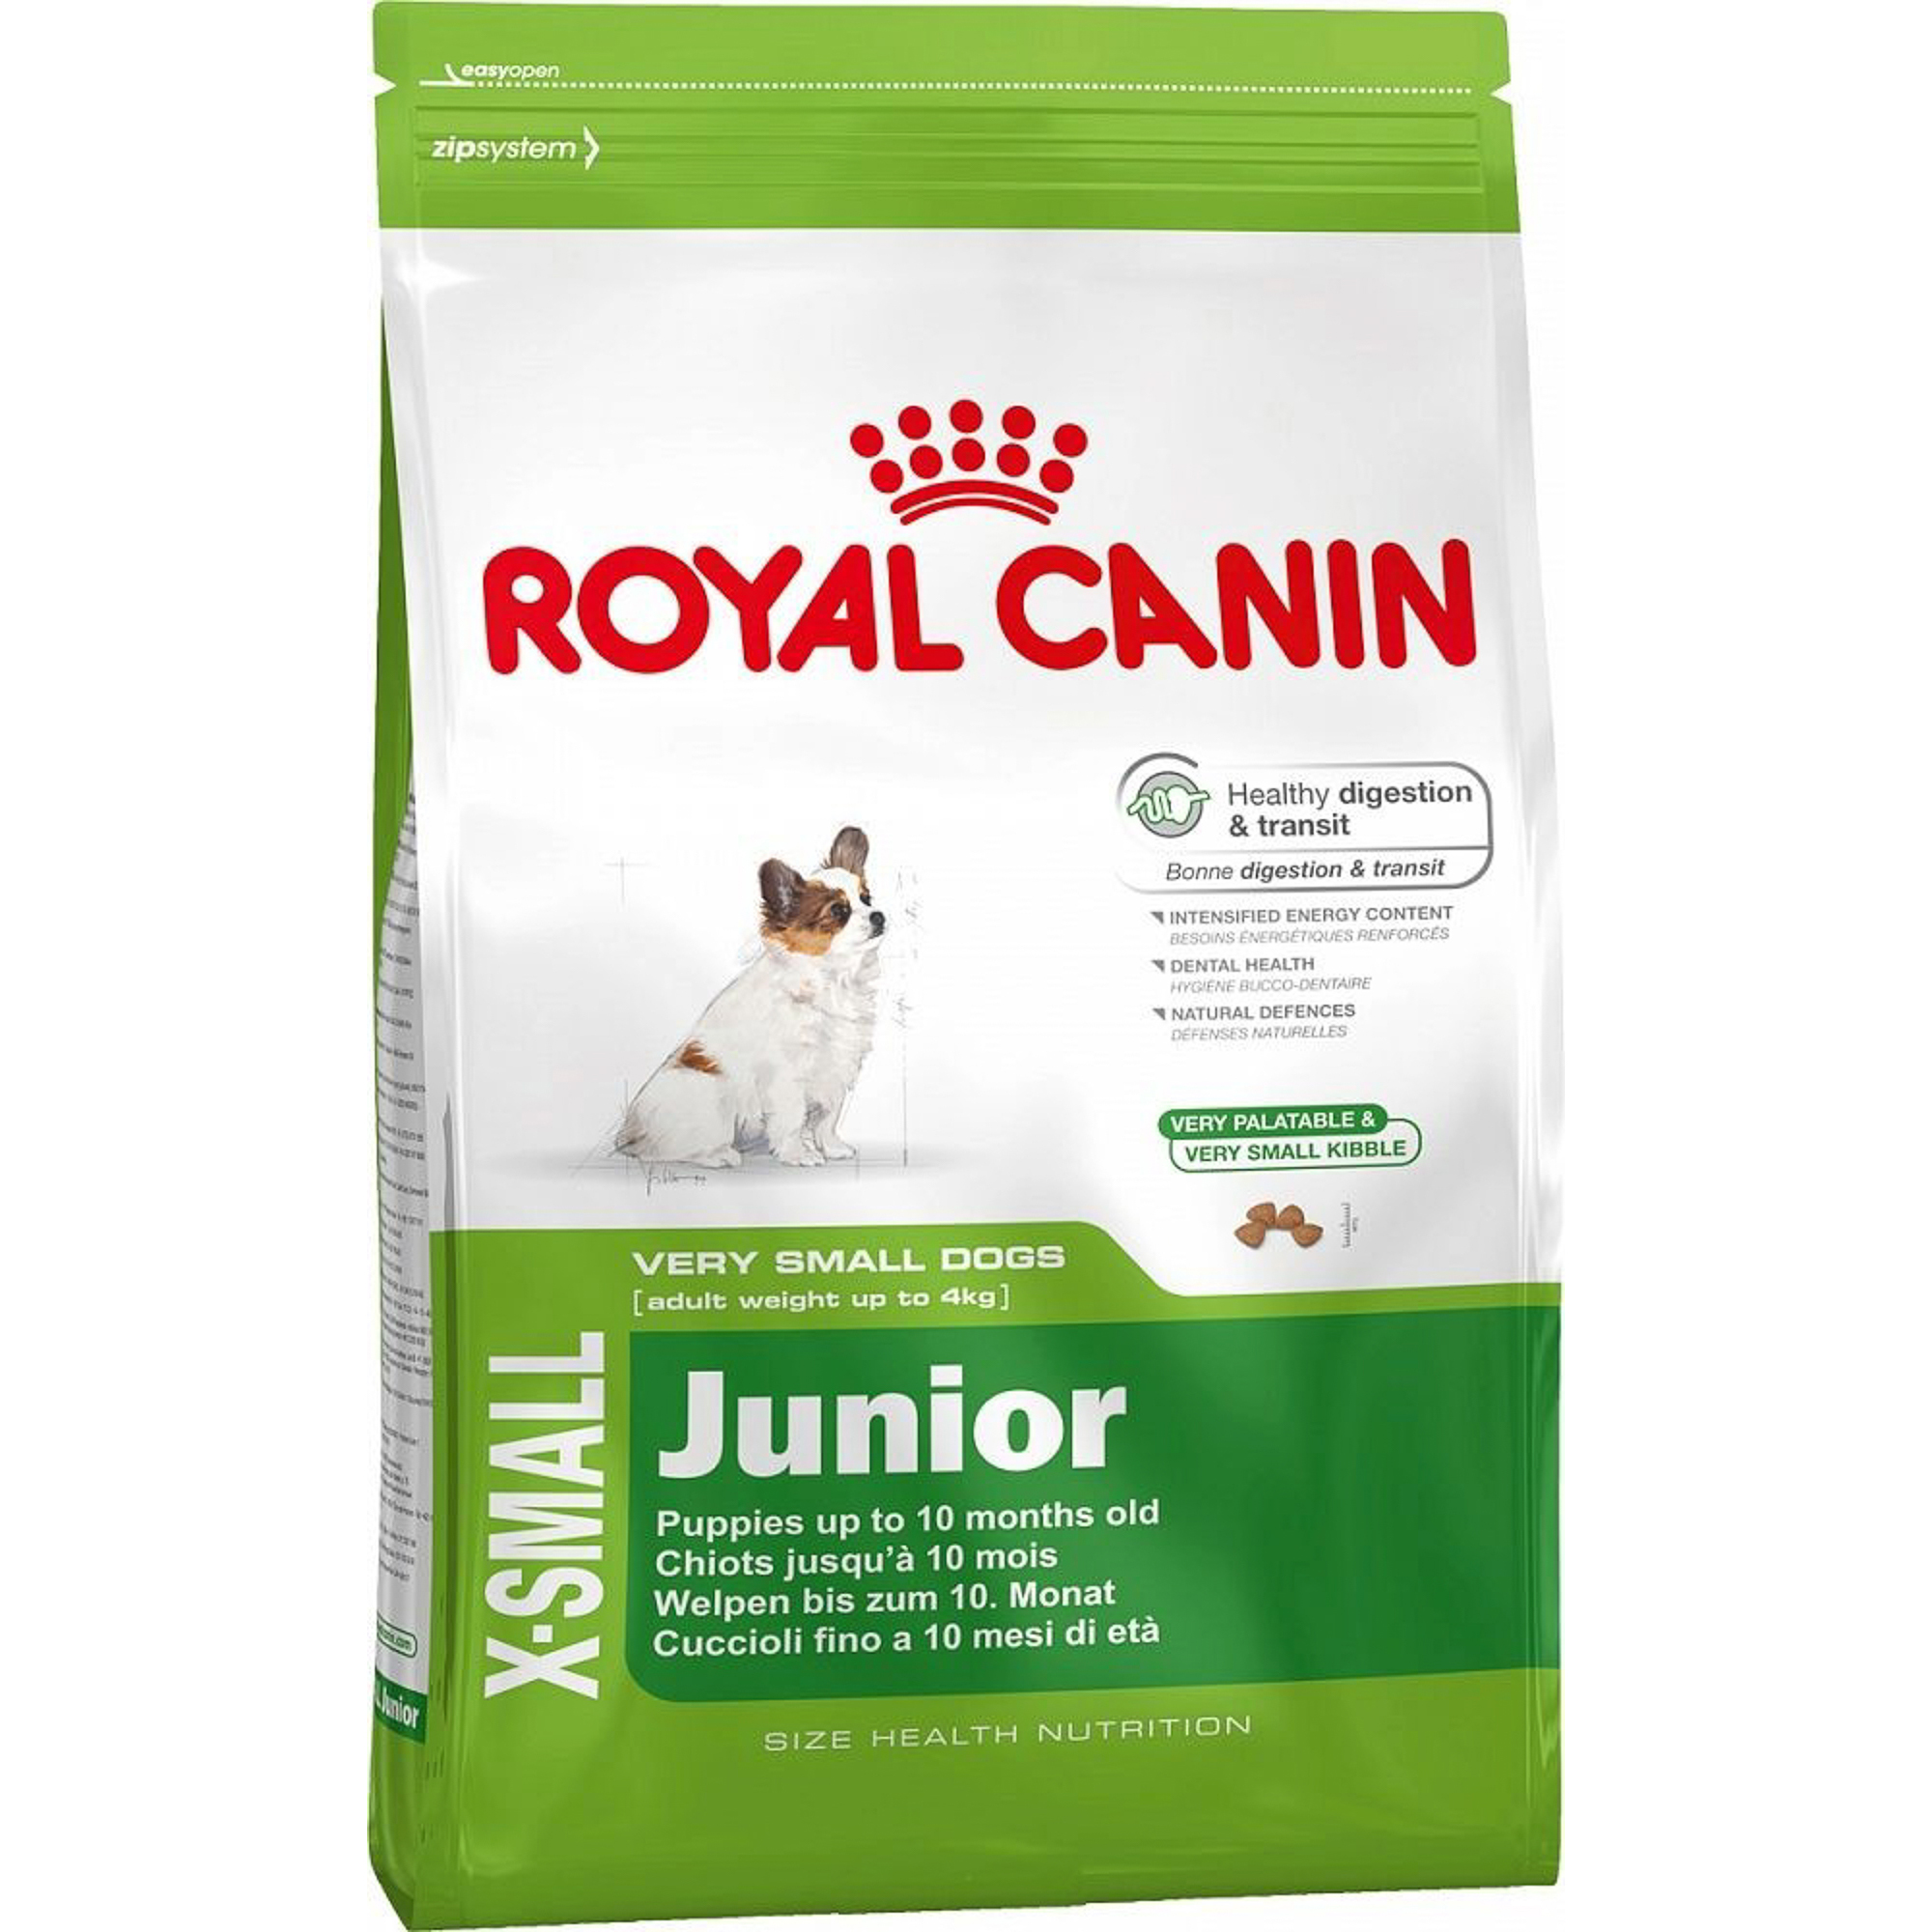 Корм для щенков Royal Canin JUNIOR для миниатюрных собак, до 10 месяцев, 1,5 кг корм для щенков royal canin junior для миниатюрных собак до 10 месяцев 1 5 кг